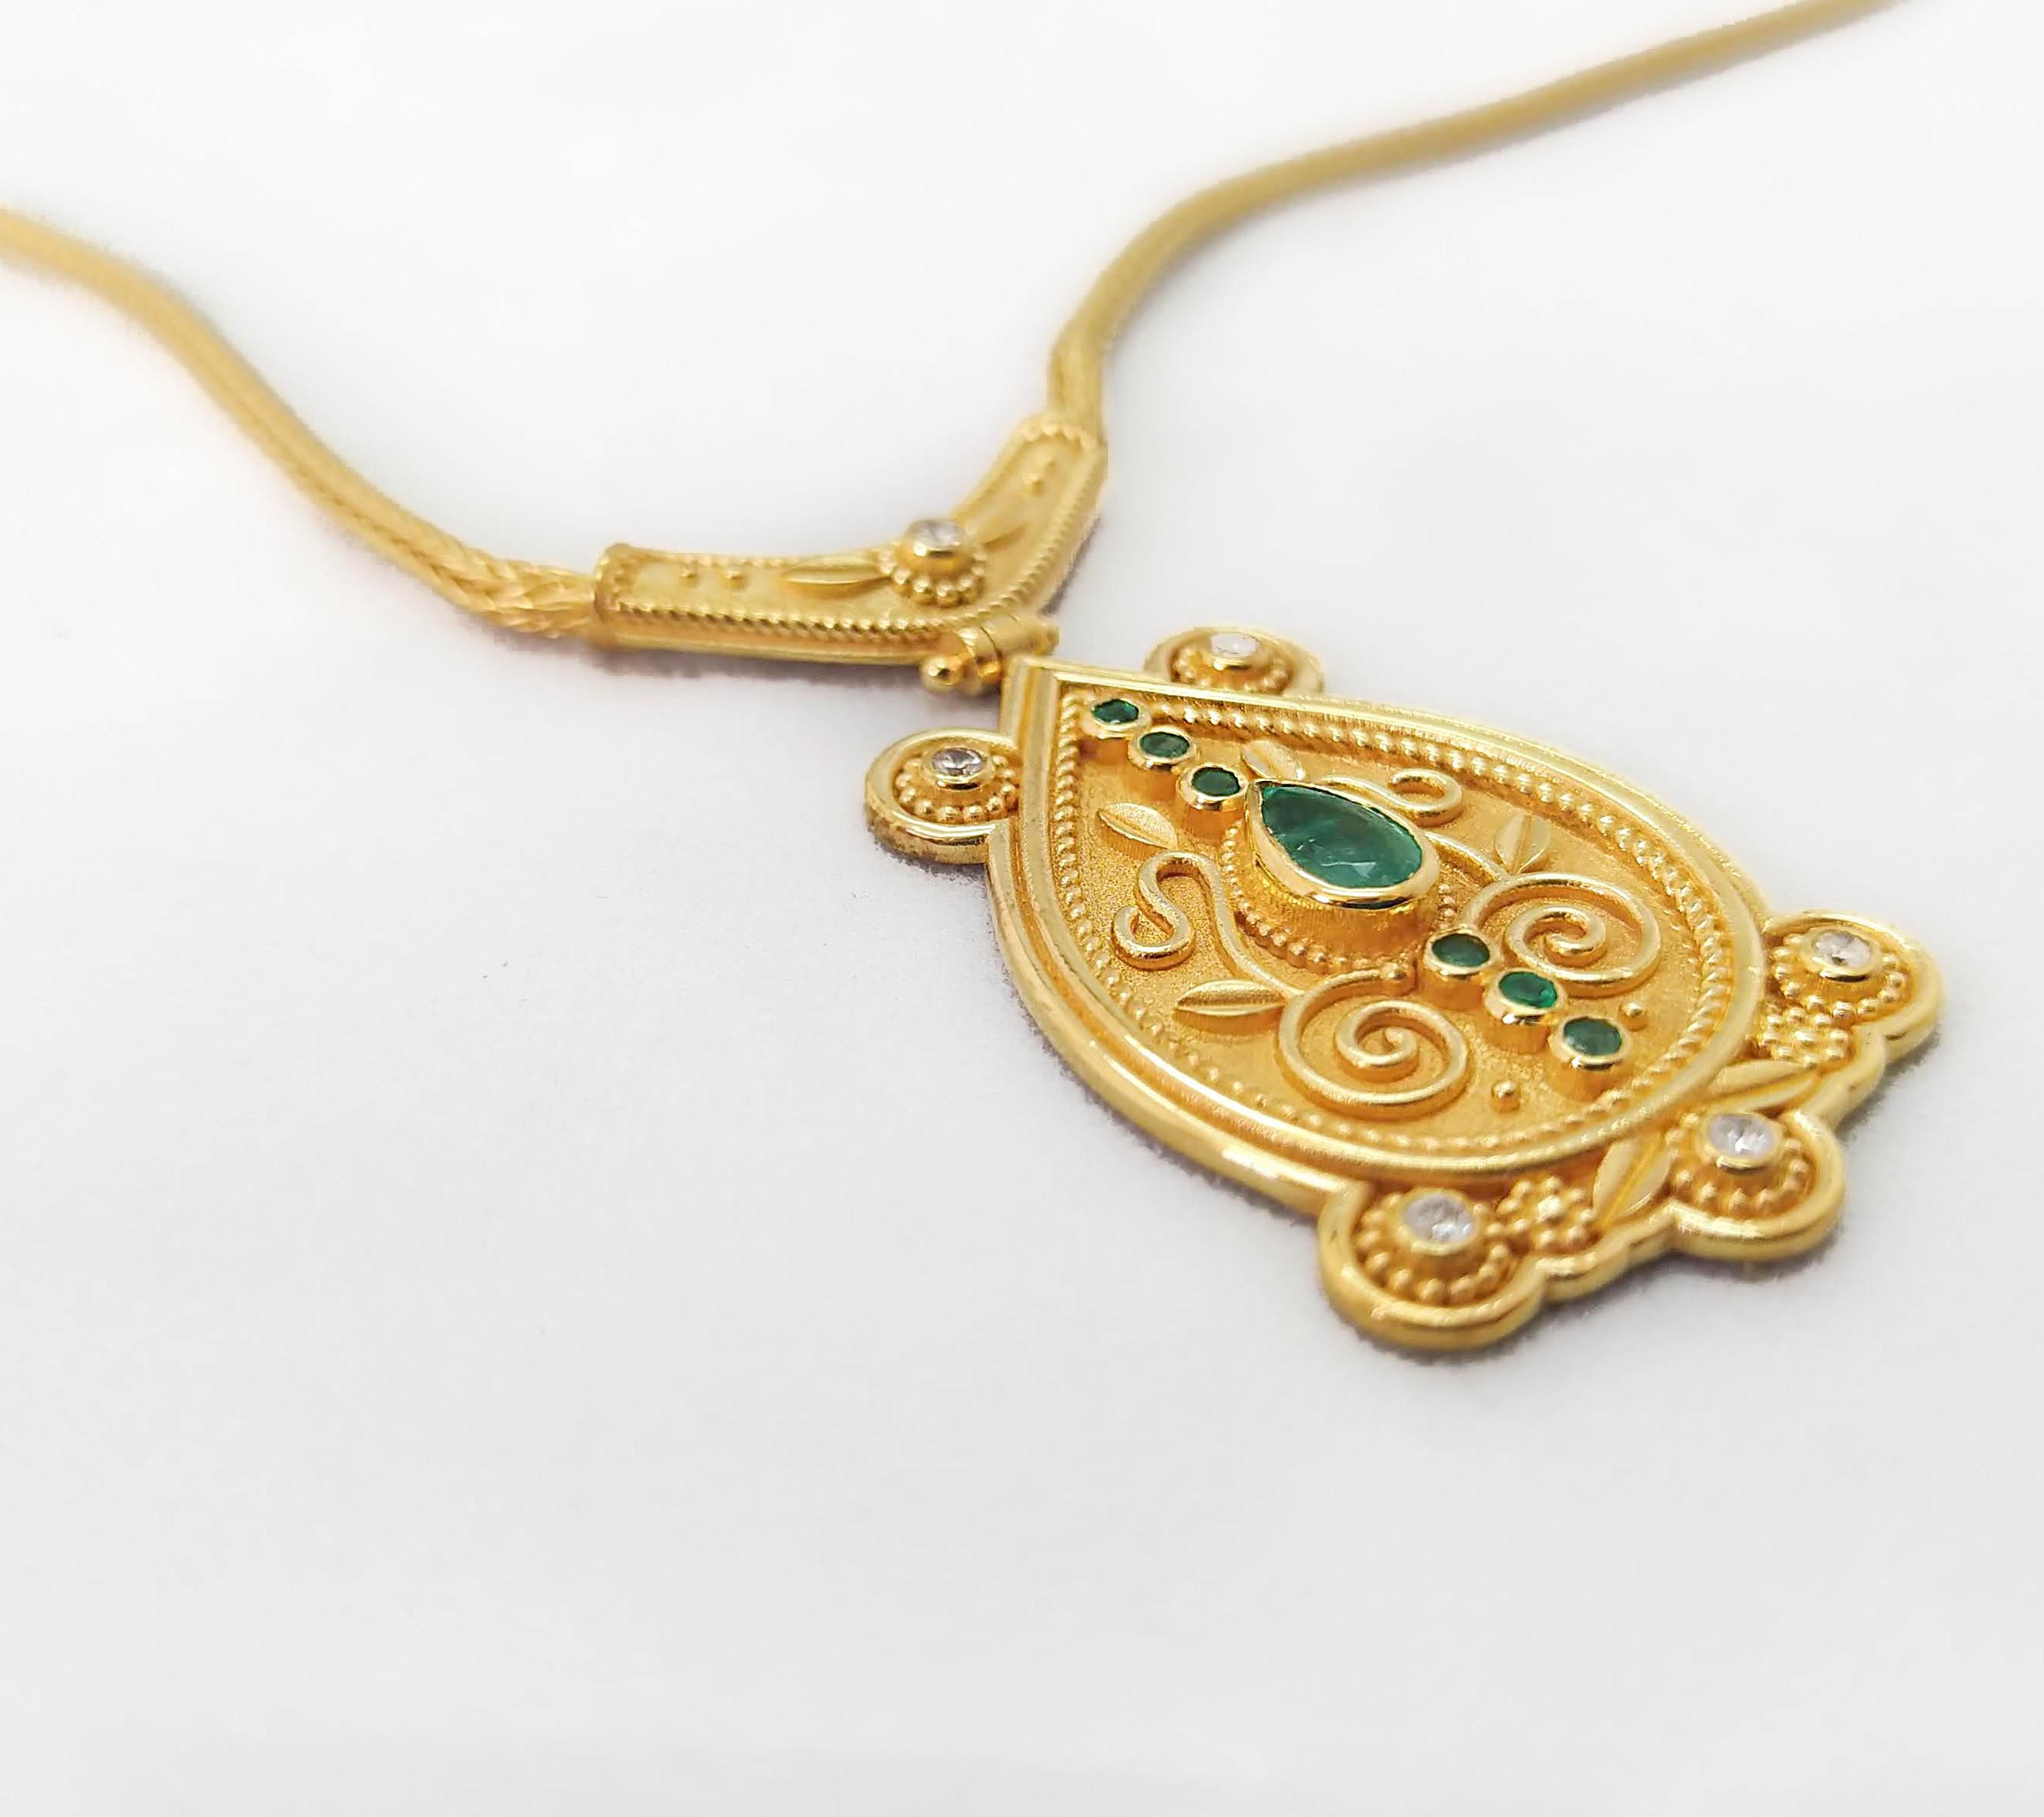 Diese S.Georgios Designer-Halskette aus 18 Karat Gelbgold ist mikroskopisch genau mit Perlen und Drahtgranulationen im byzantinischen Stil verziert und mit einem einzigartigen Samt-Hintergrund versehen. Diese wunderschöne Anhänger-Halskette